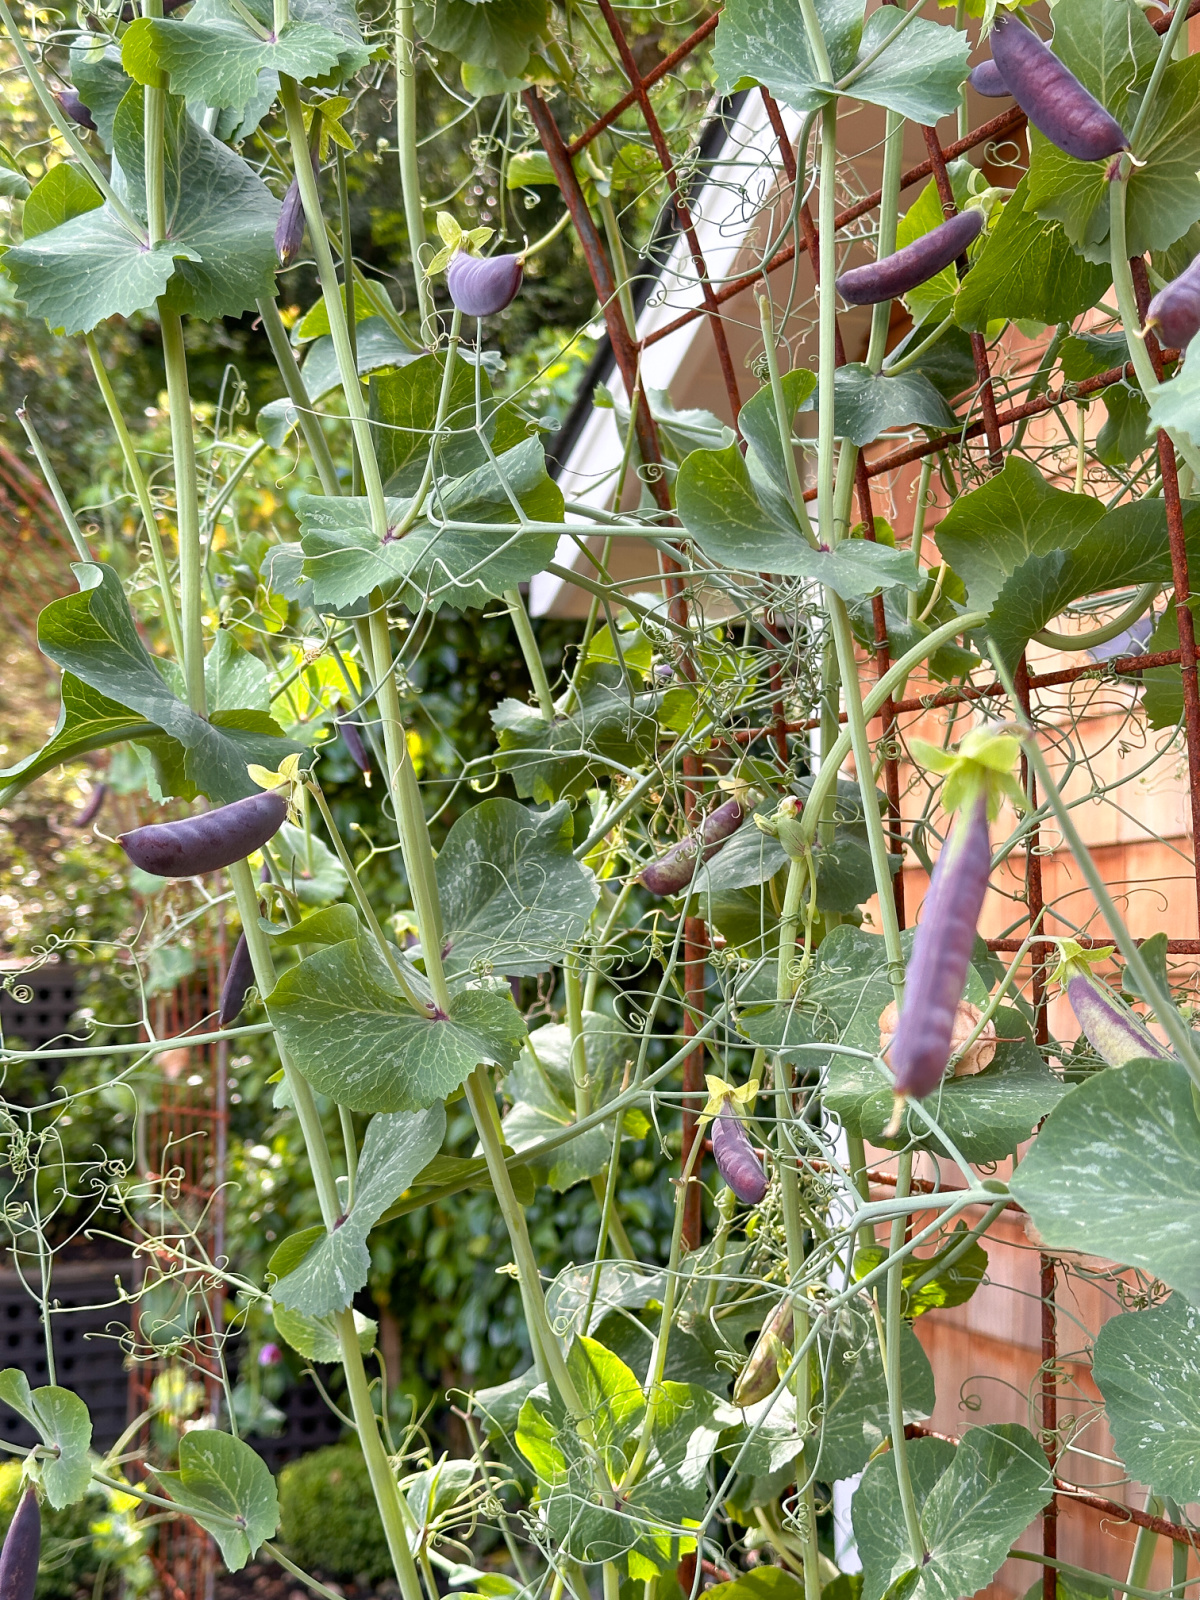 Snap peas on garden trellis.